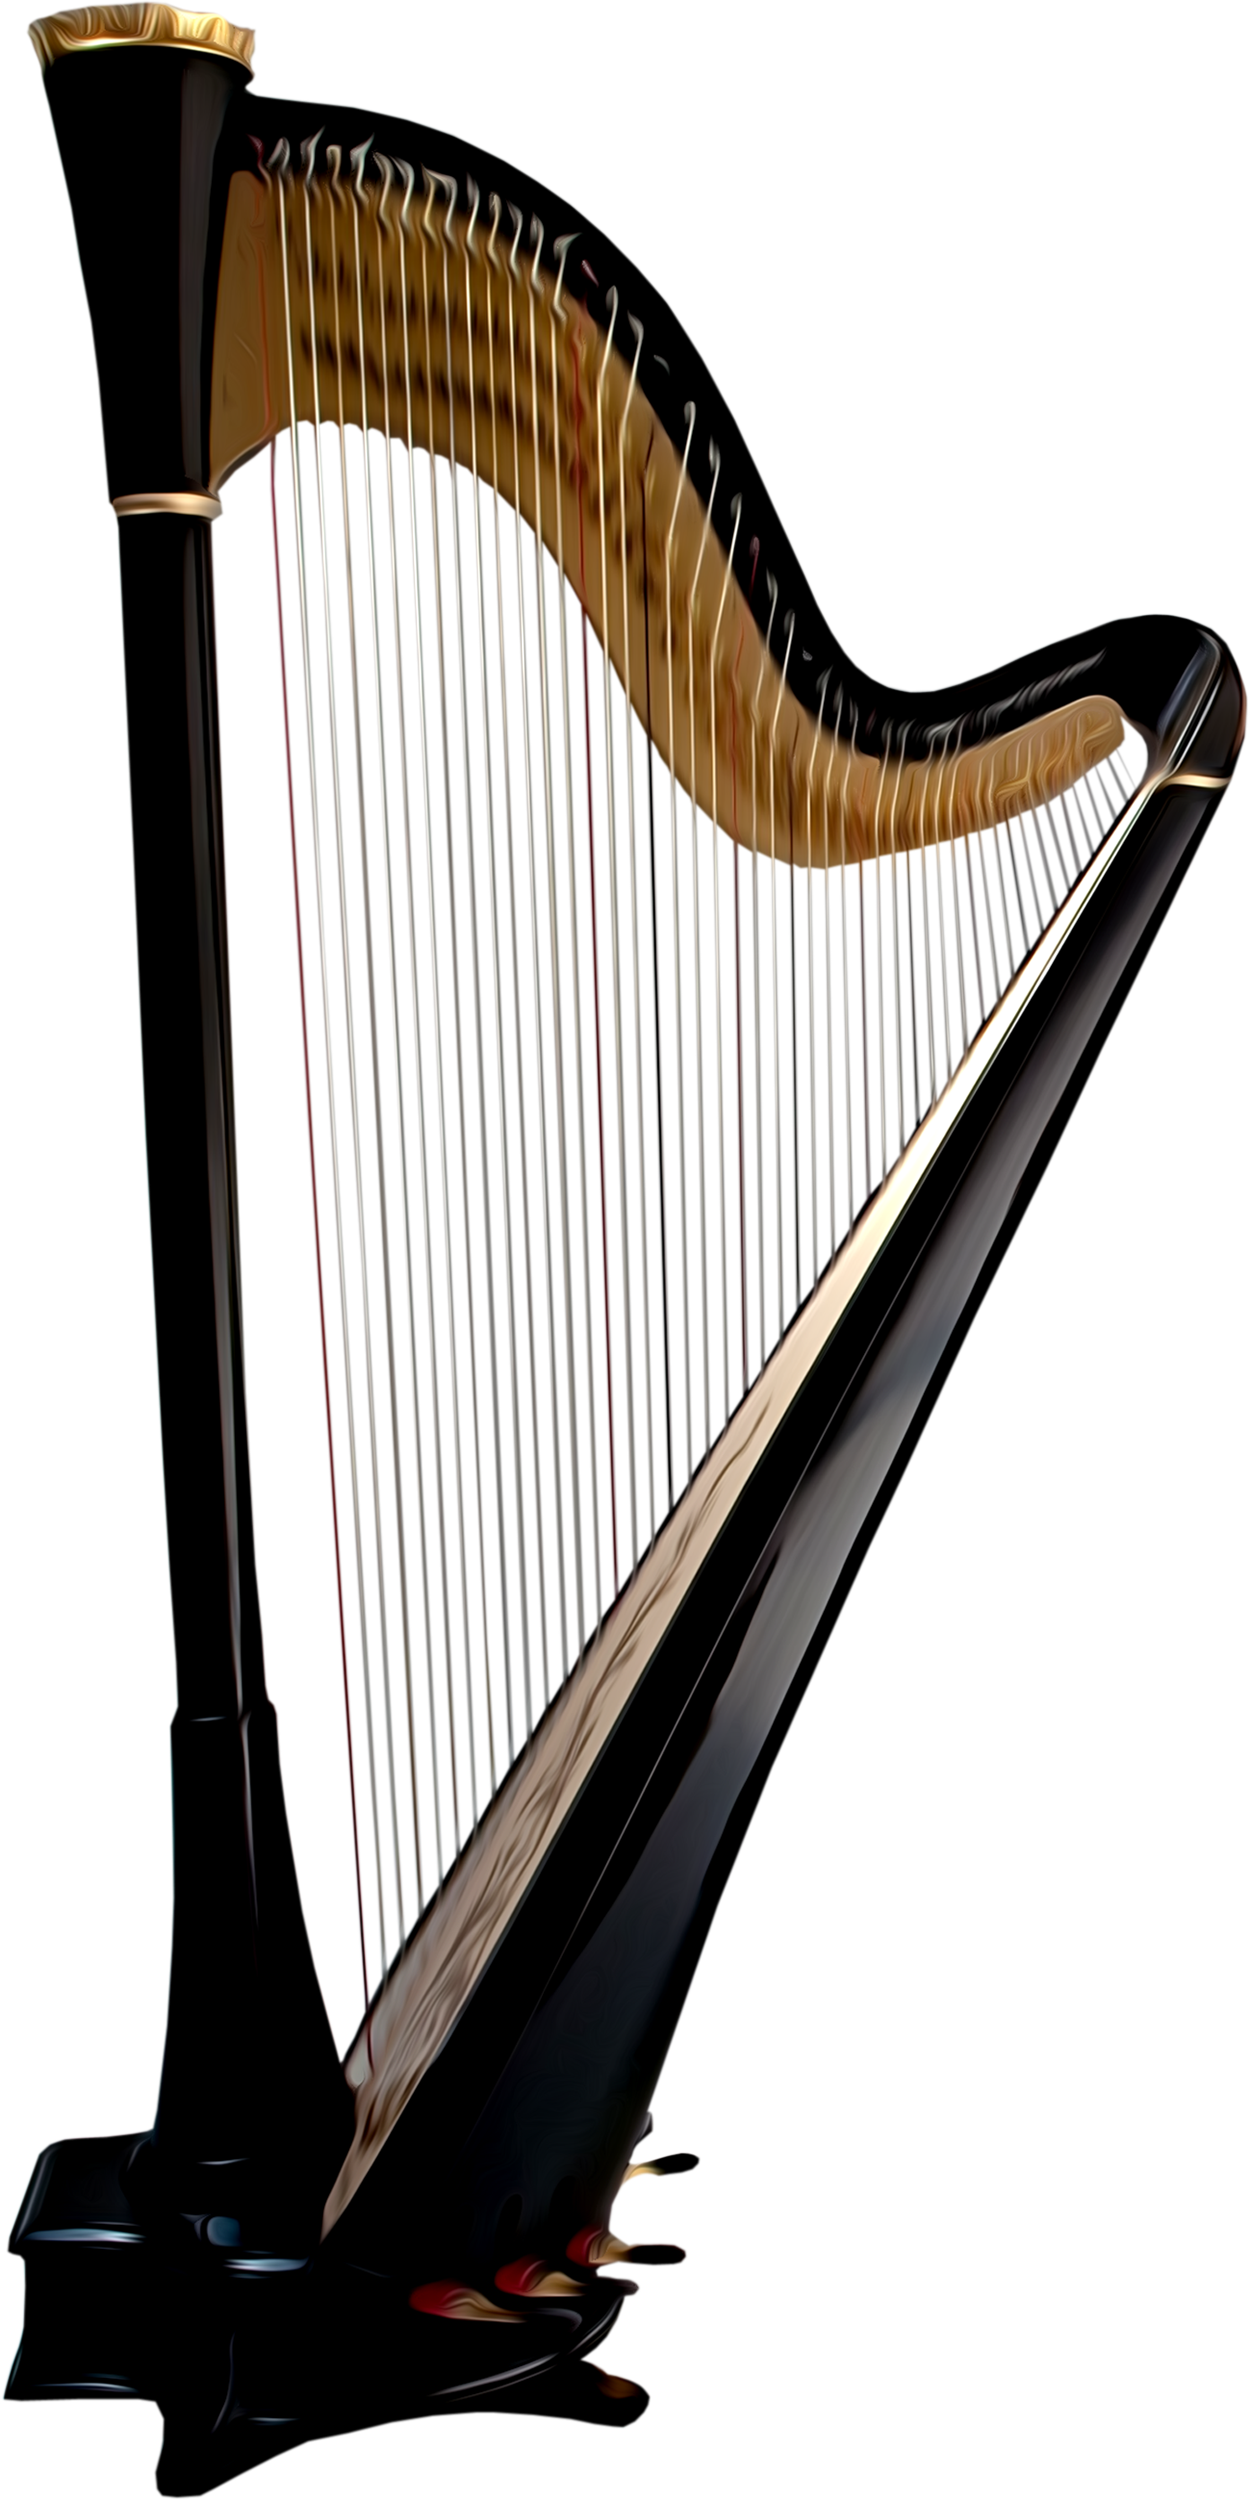 Celtic Irish Harp Transparent Images